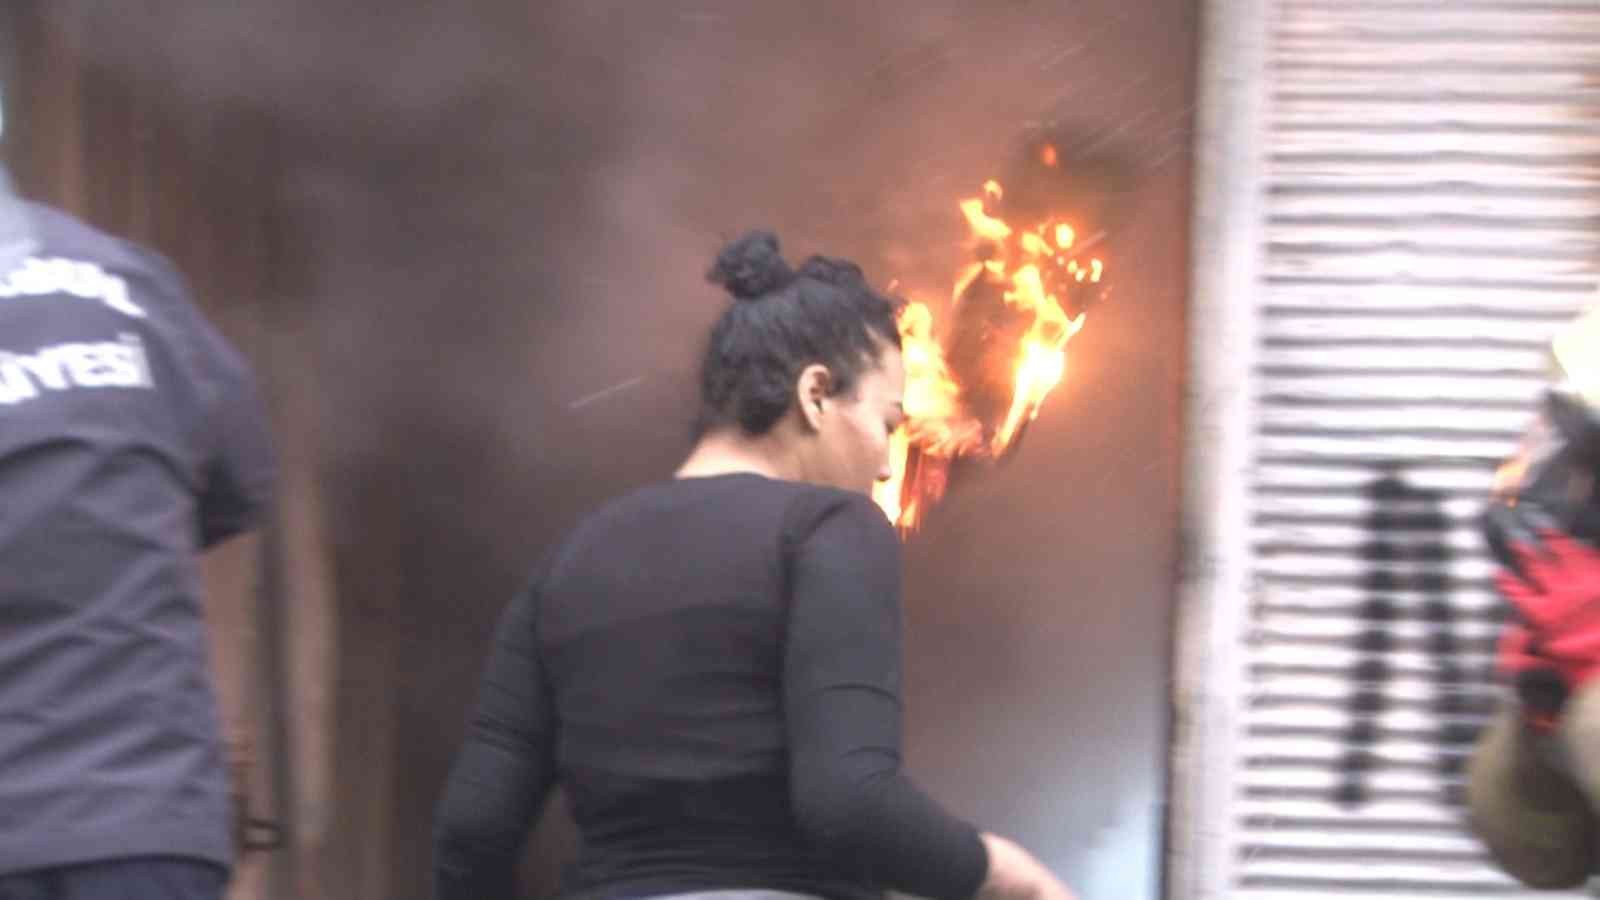 Beyoğlu’nda yangın: Bir kadın itfaiye ekiplerine yardım edeyim derken yaralanıyordu #istanbul